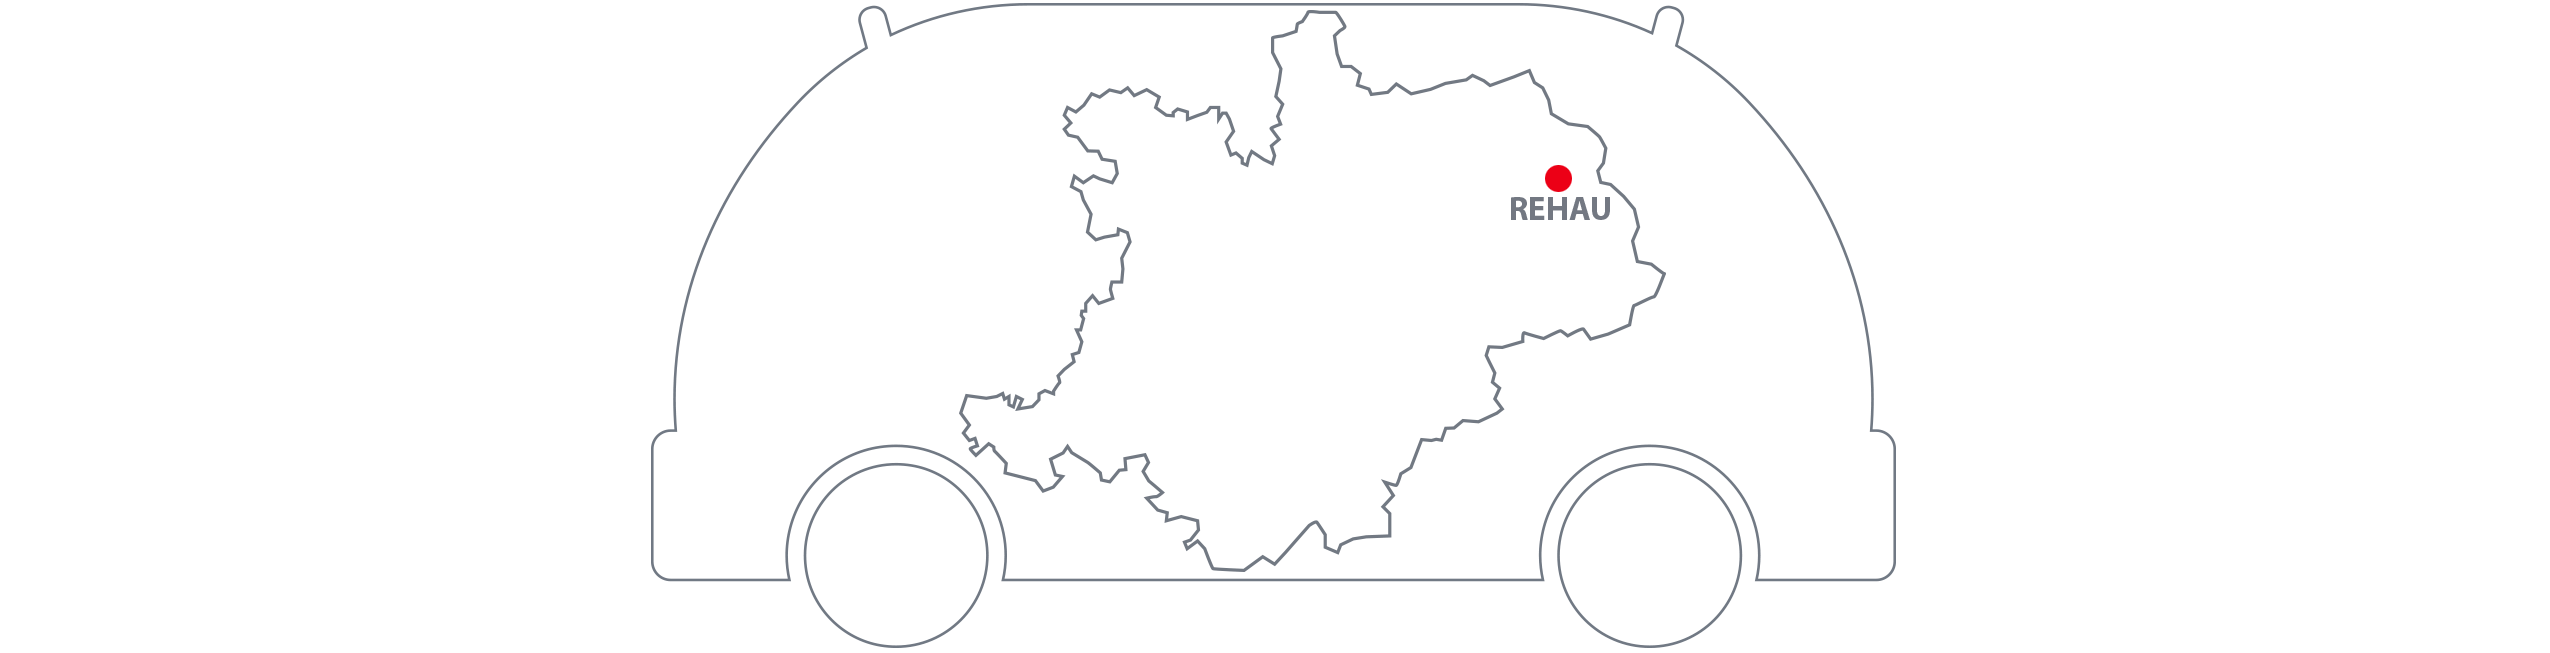 Shuttle-Modellregion Oberfranken Karte Rehau